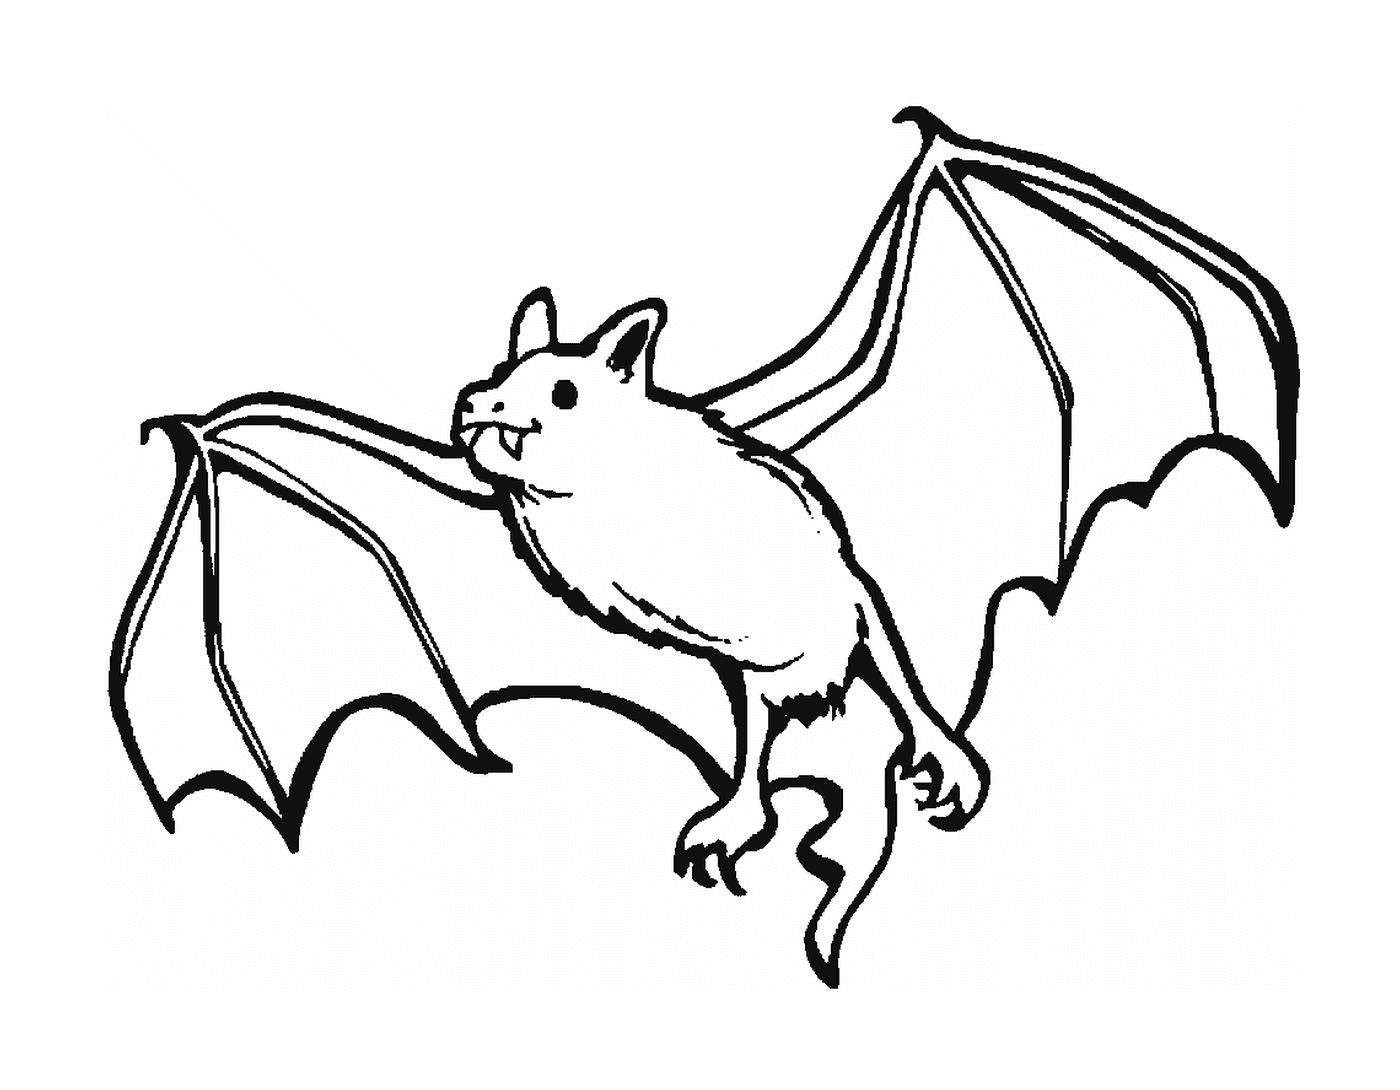  morcego vampiro vampiro 